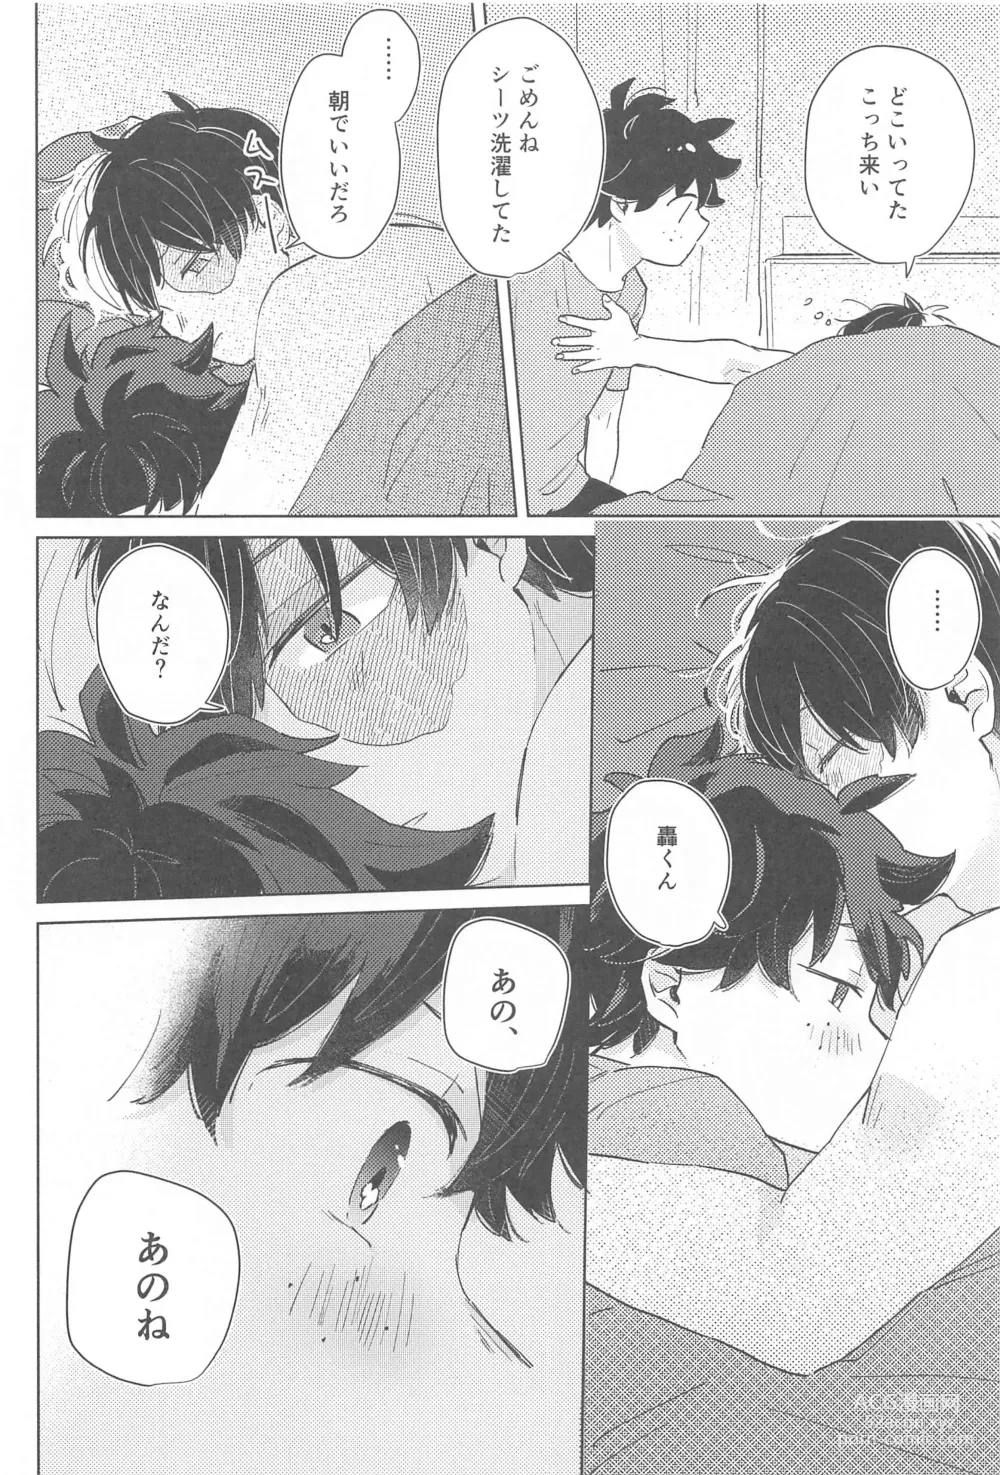 Page 13 of doujinshi Fuyakeru made Aishite ne